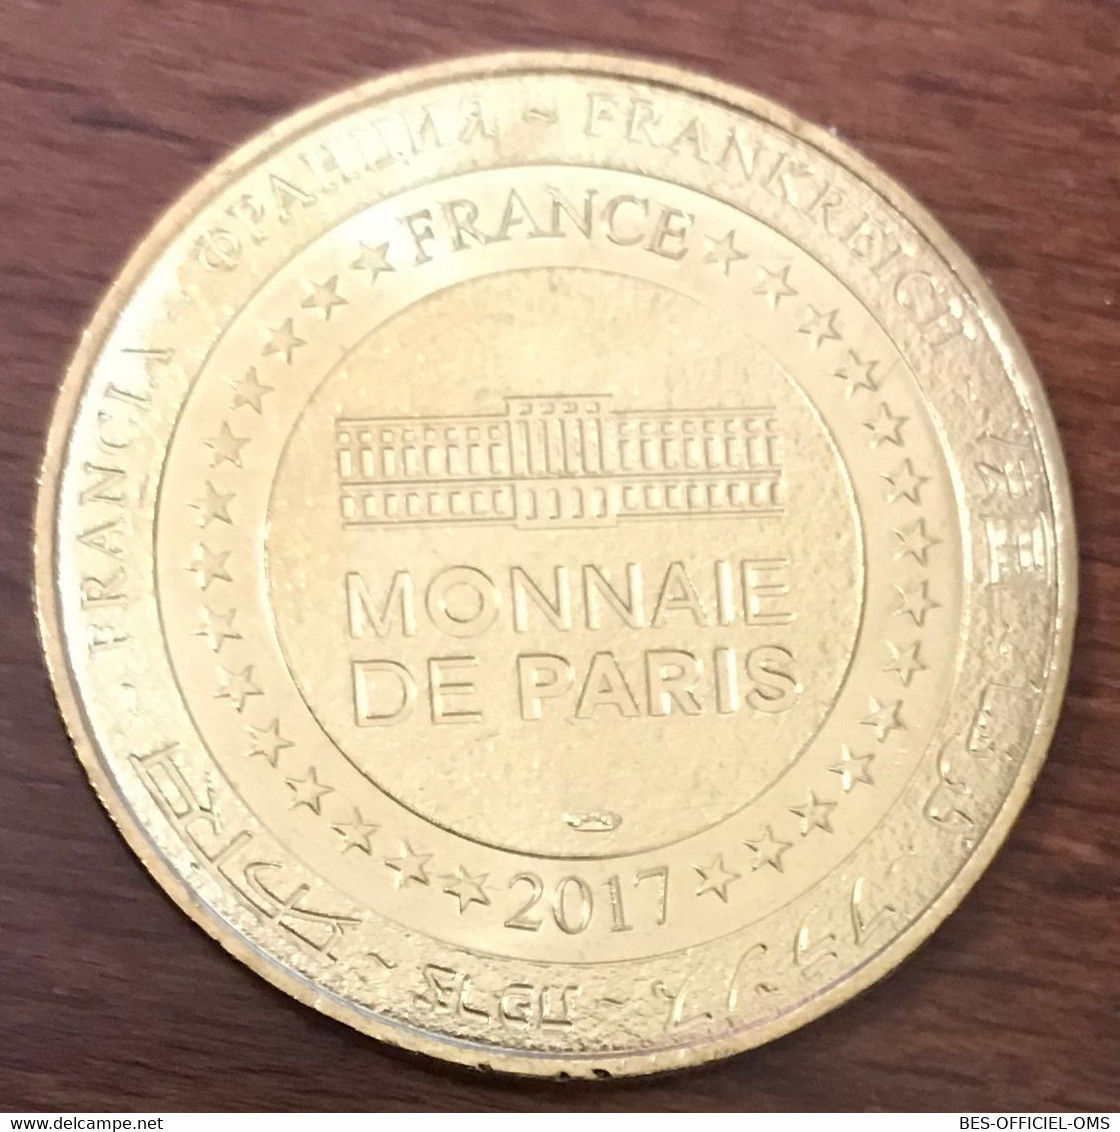 29 CONCARNEAU VILLE CLOSE MDP 2017 MÉDAILLE SOUVENIR MONNAIE DE PARIS JETON TOURISTIQUE MEDALS TOKENS COINS - 2017